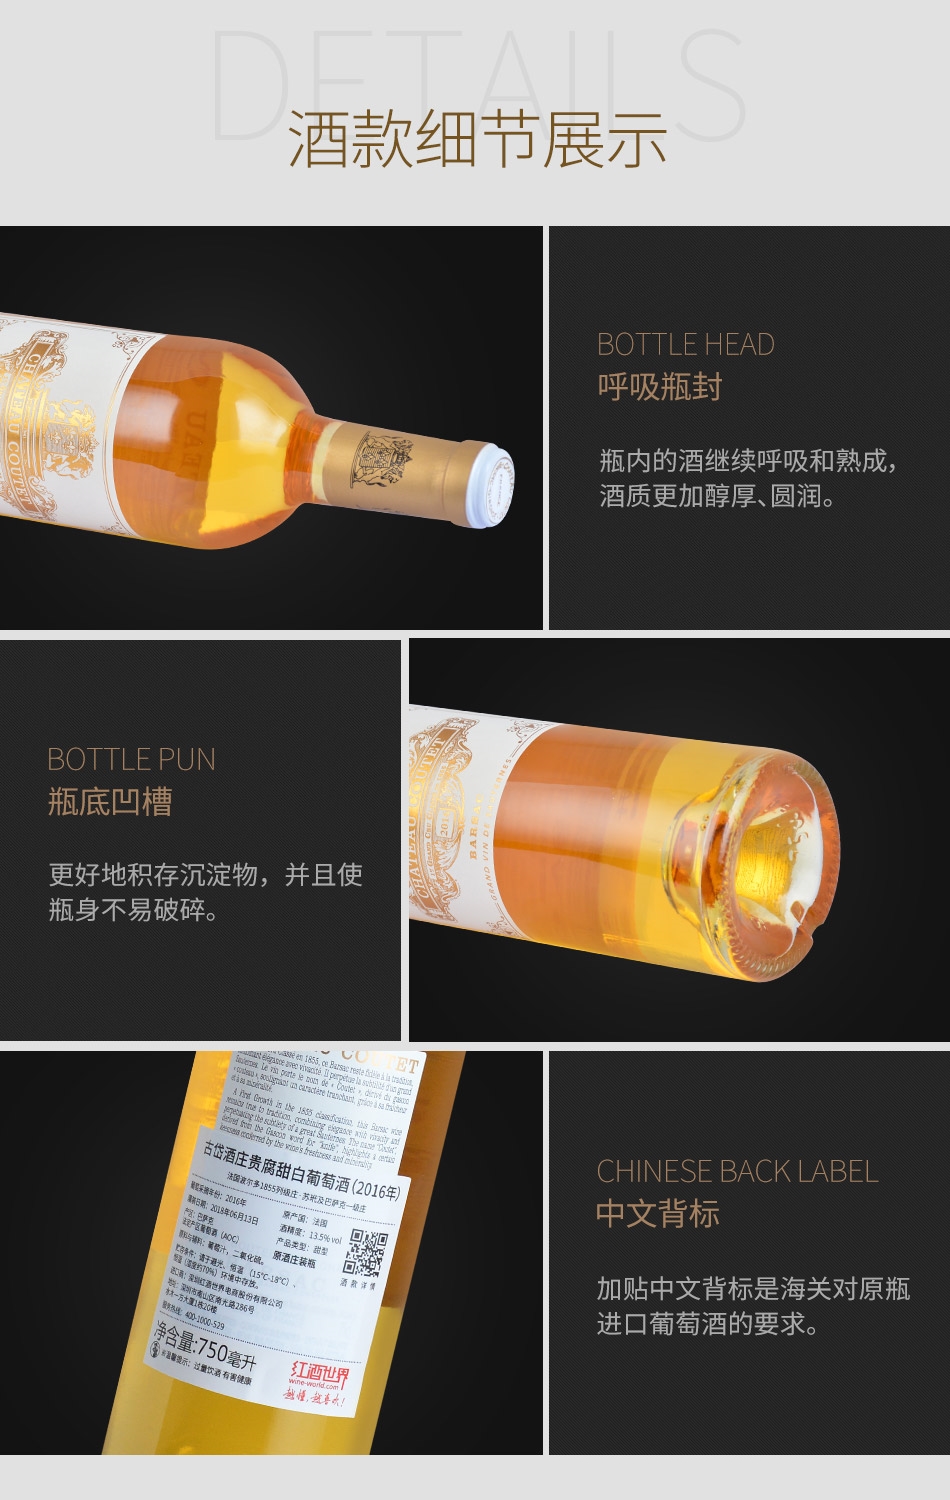 2016年古岱酒庄贵腐甜白葡萄酒